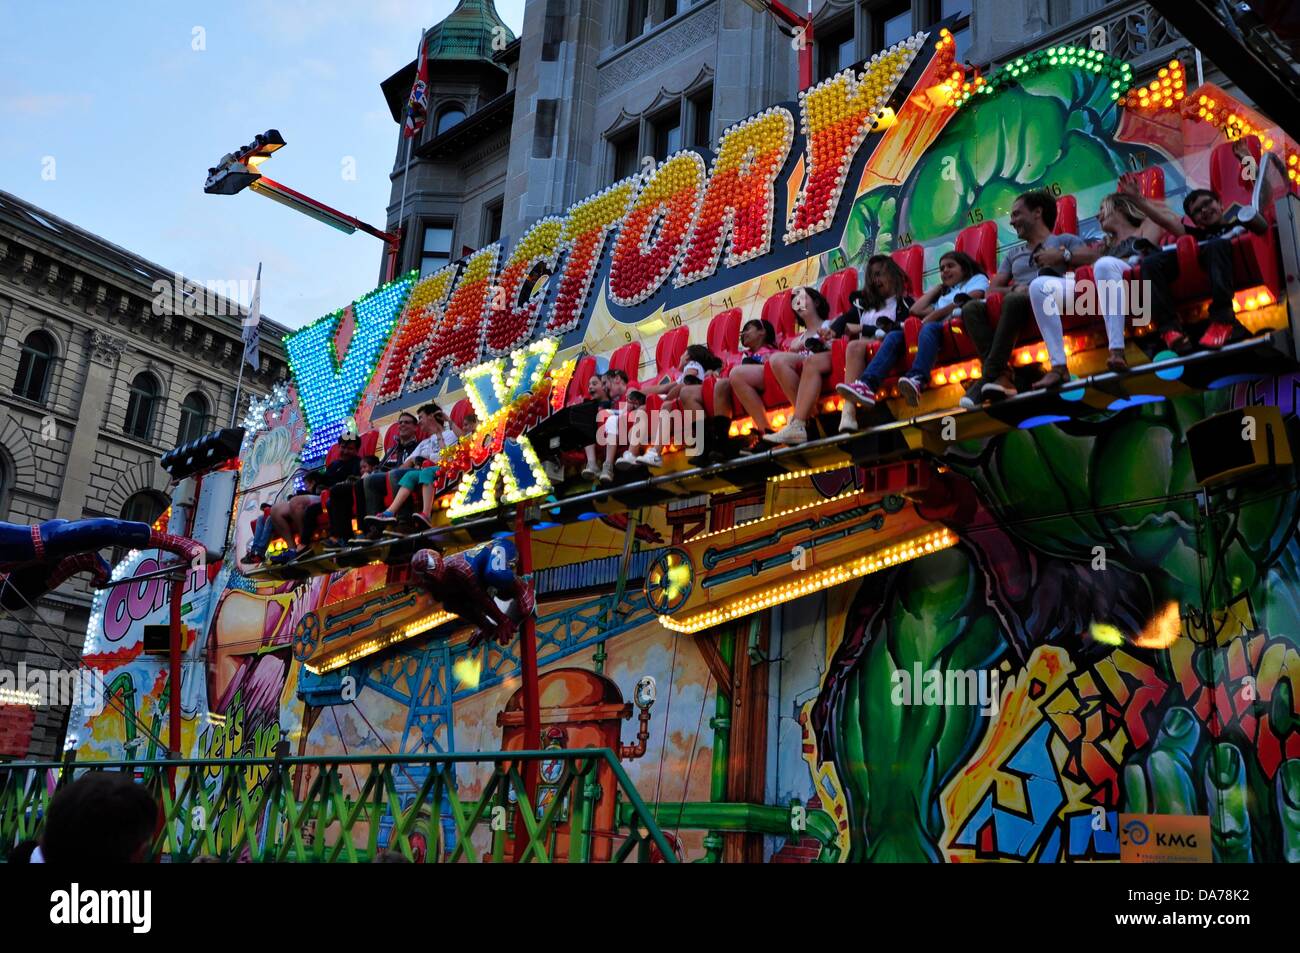 Zürich, Schweiz. 5. Juli 2013. Im Zentrum von Zürich, Schweiz, ist ein weltweit großes Festival für drei Tage statt. Partys, Karneval, Fahrgeschäfte, Märkte und Essen und trinken steht überall.  -Menschen spielen Riesen schreiten in Zürich Festival. Stockfoto